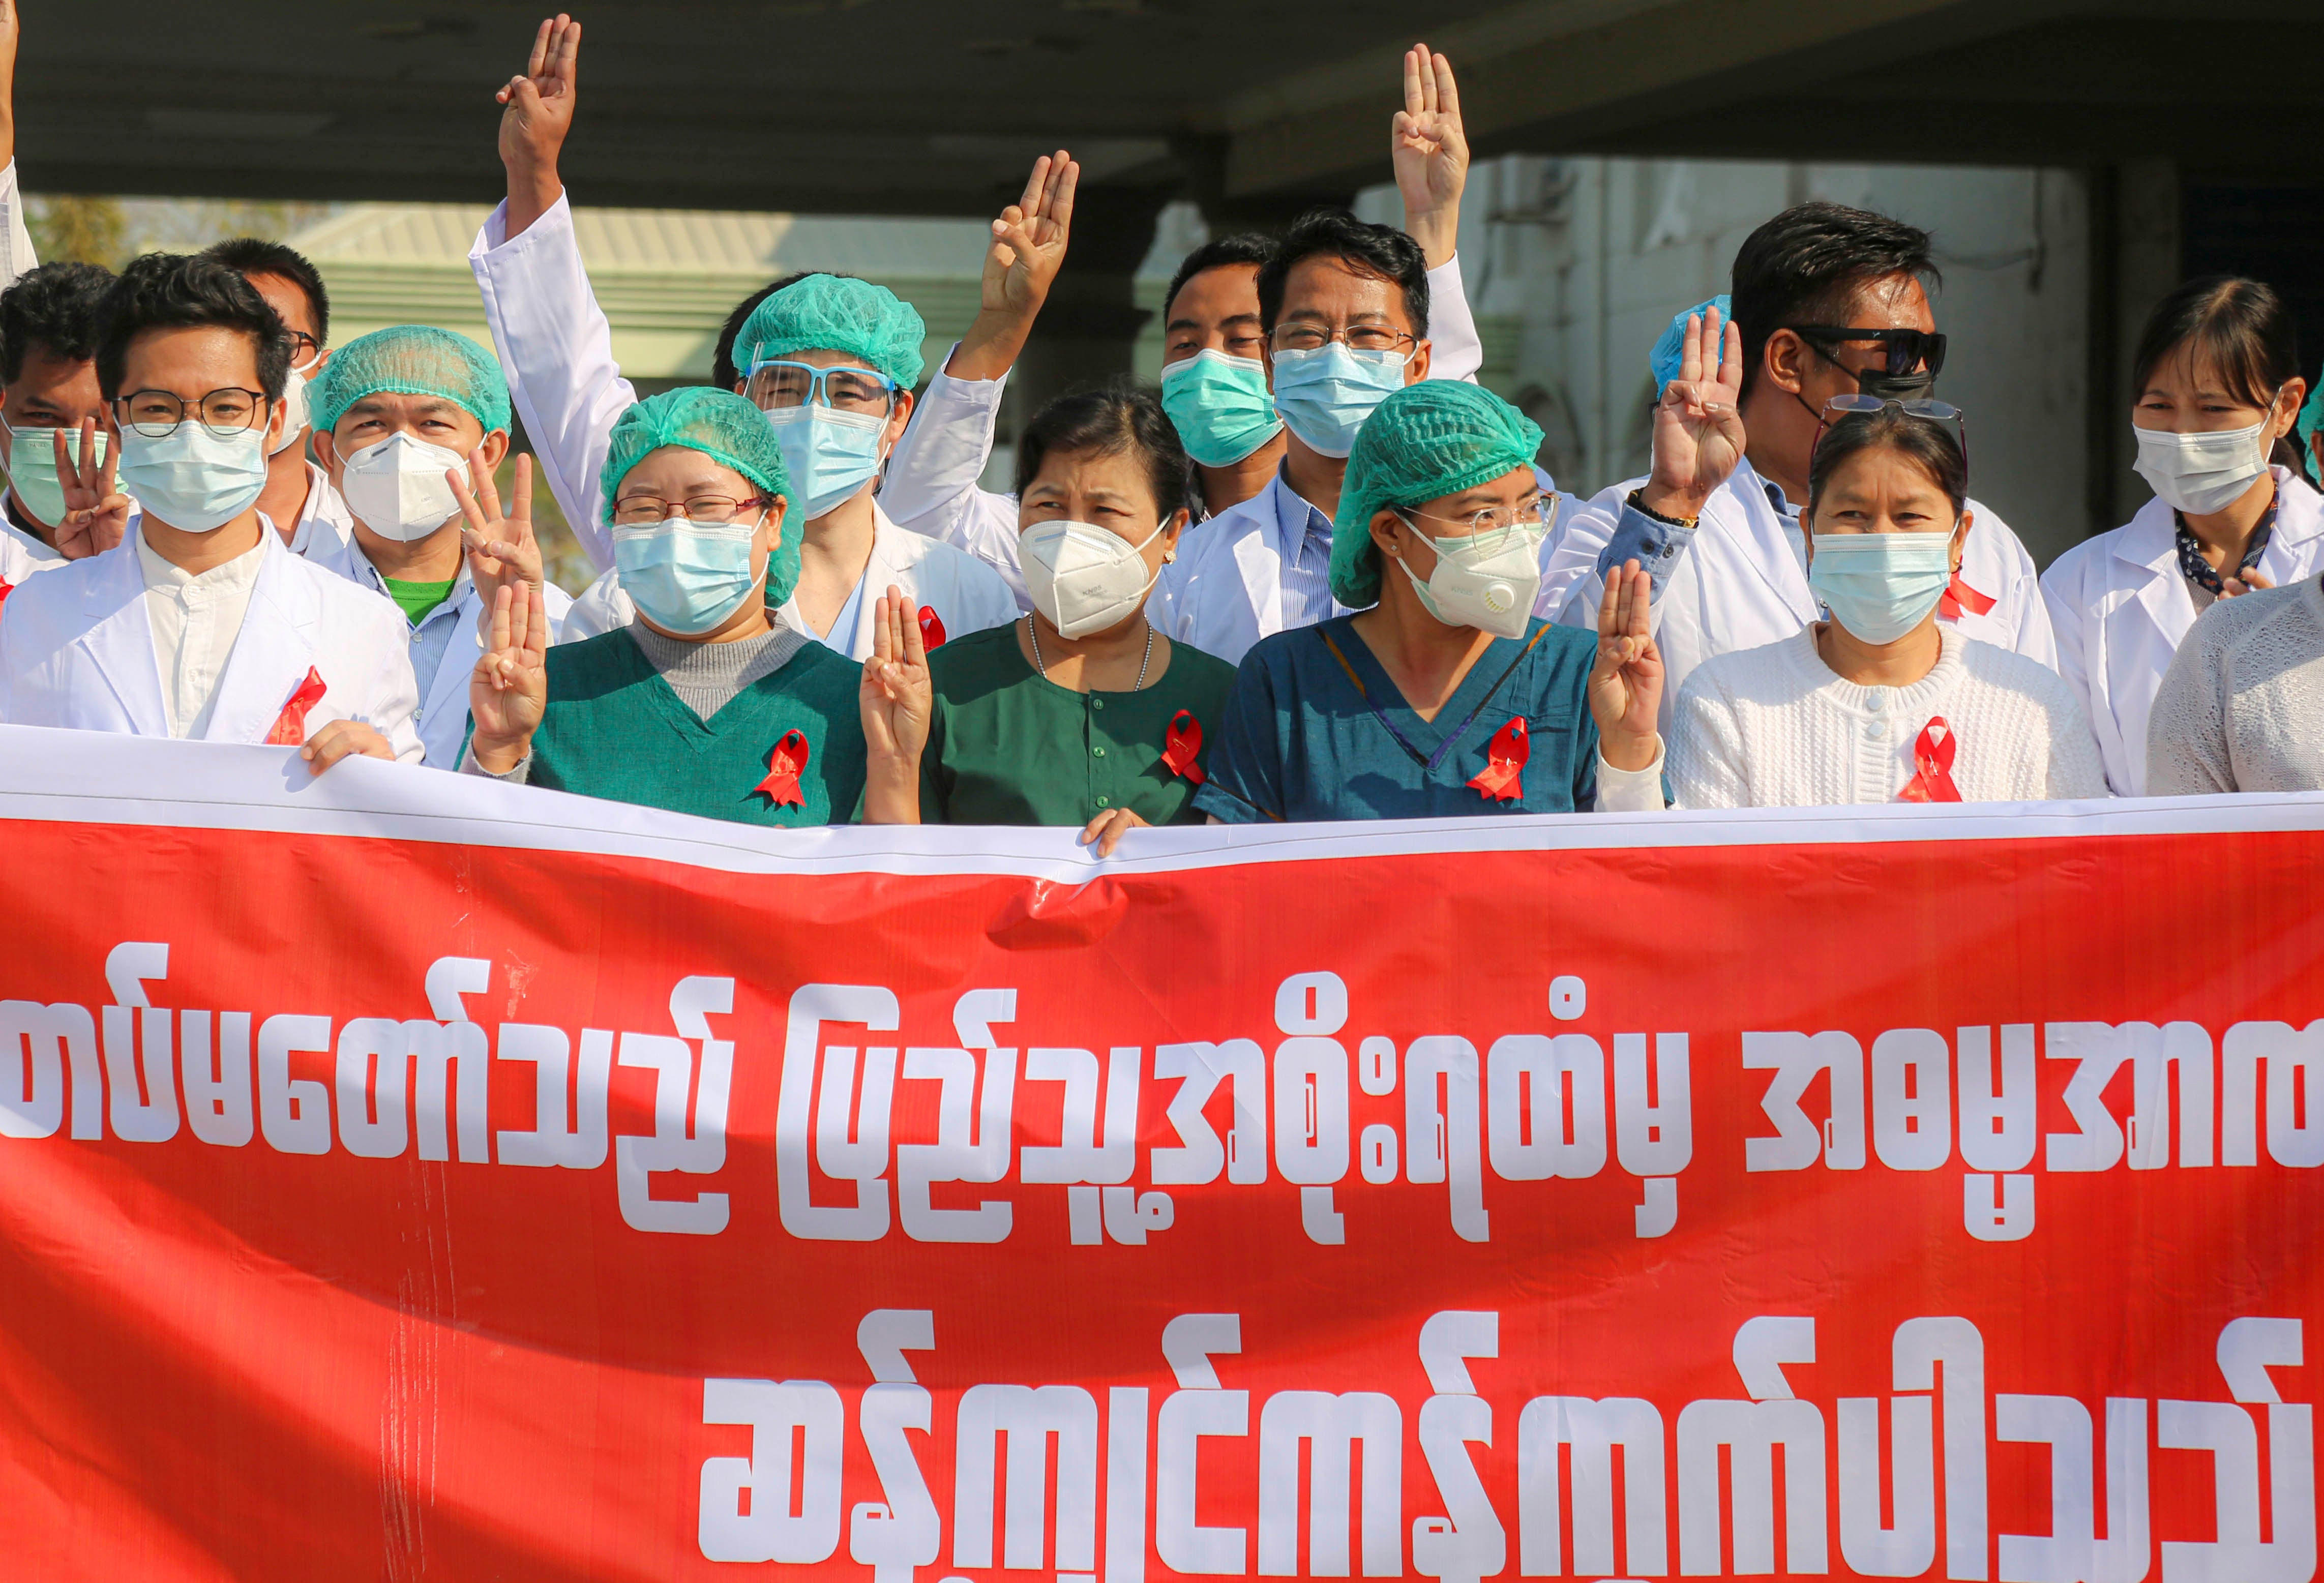 Ces travailleuses et travailleurs de la santé participaient à une manifestation de la « Campagne du ruban rouge » devant un hôpital de Mandalay, au Myanmar, pour protester contre le coup d'État militaire, le 3 février 2021.